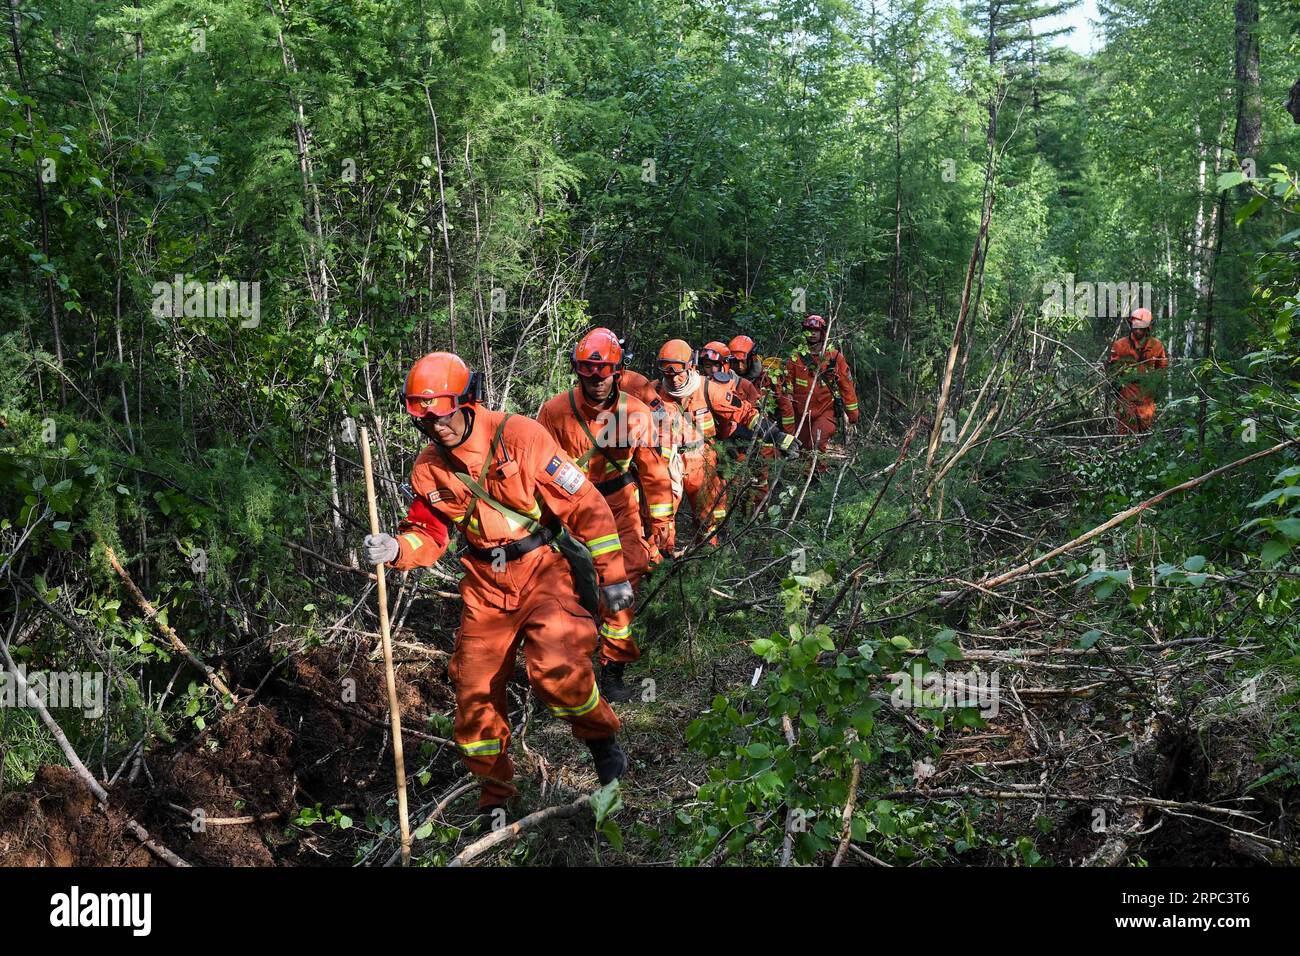 (190622) -- GENHE, 22 juin 2019 (Xinhua) -- les pompiers se rendent sur un site de feu de forêt dans la région autonome de Mongolie intérieure du nord de la Chine, 22 juin 2019. Un incendie de forêt qui a fait rage pendant trois jours dans la région autonome de Mongolie intérieure du nord de la Chine a été maîtrisé, ont déclaré samedi les autorités locales. L’opération de nettoyage est en cours à Xiushan, selon le quartier général des pompiers. Après un énorme effort de plus de 5 000 pompiers, le feu a été maîtrisé sur tous les fronts à 4:40 h samedi. (Xinhua/Liu Lei) CHINE-MONGOLIE INTÉRIEURE-FEU DE FORÊT (CN) PUBLICATIONxNOTxINxCHN Banque D'Images